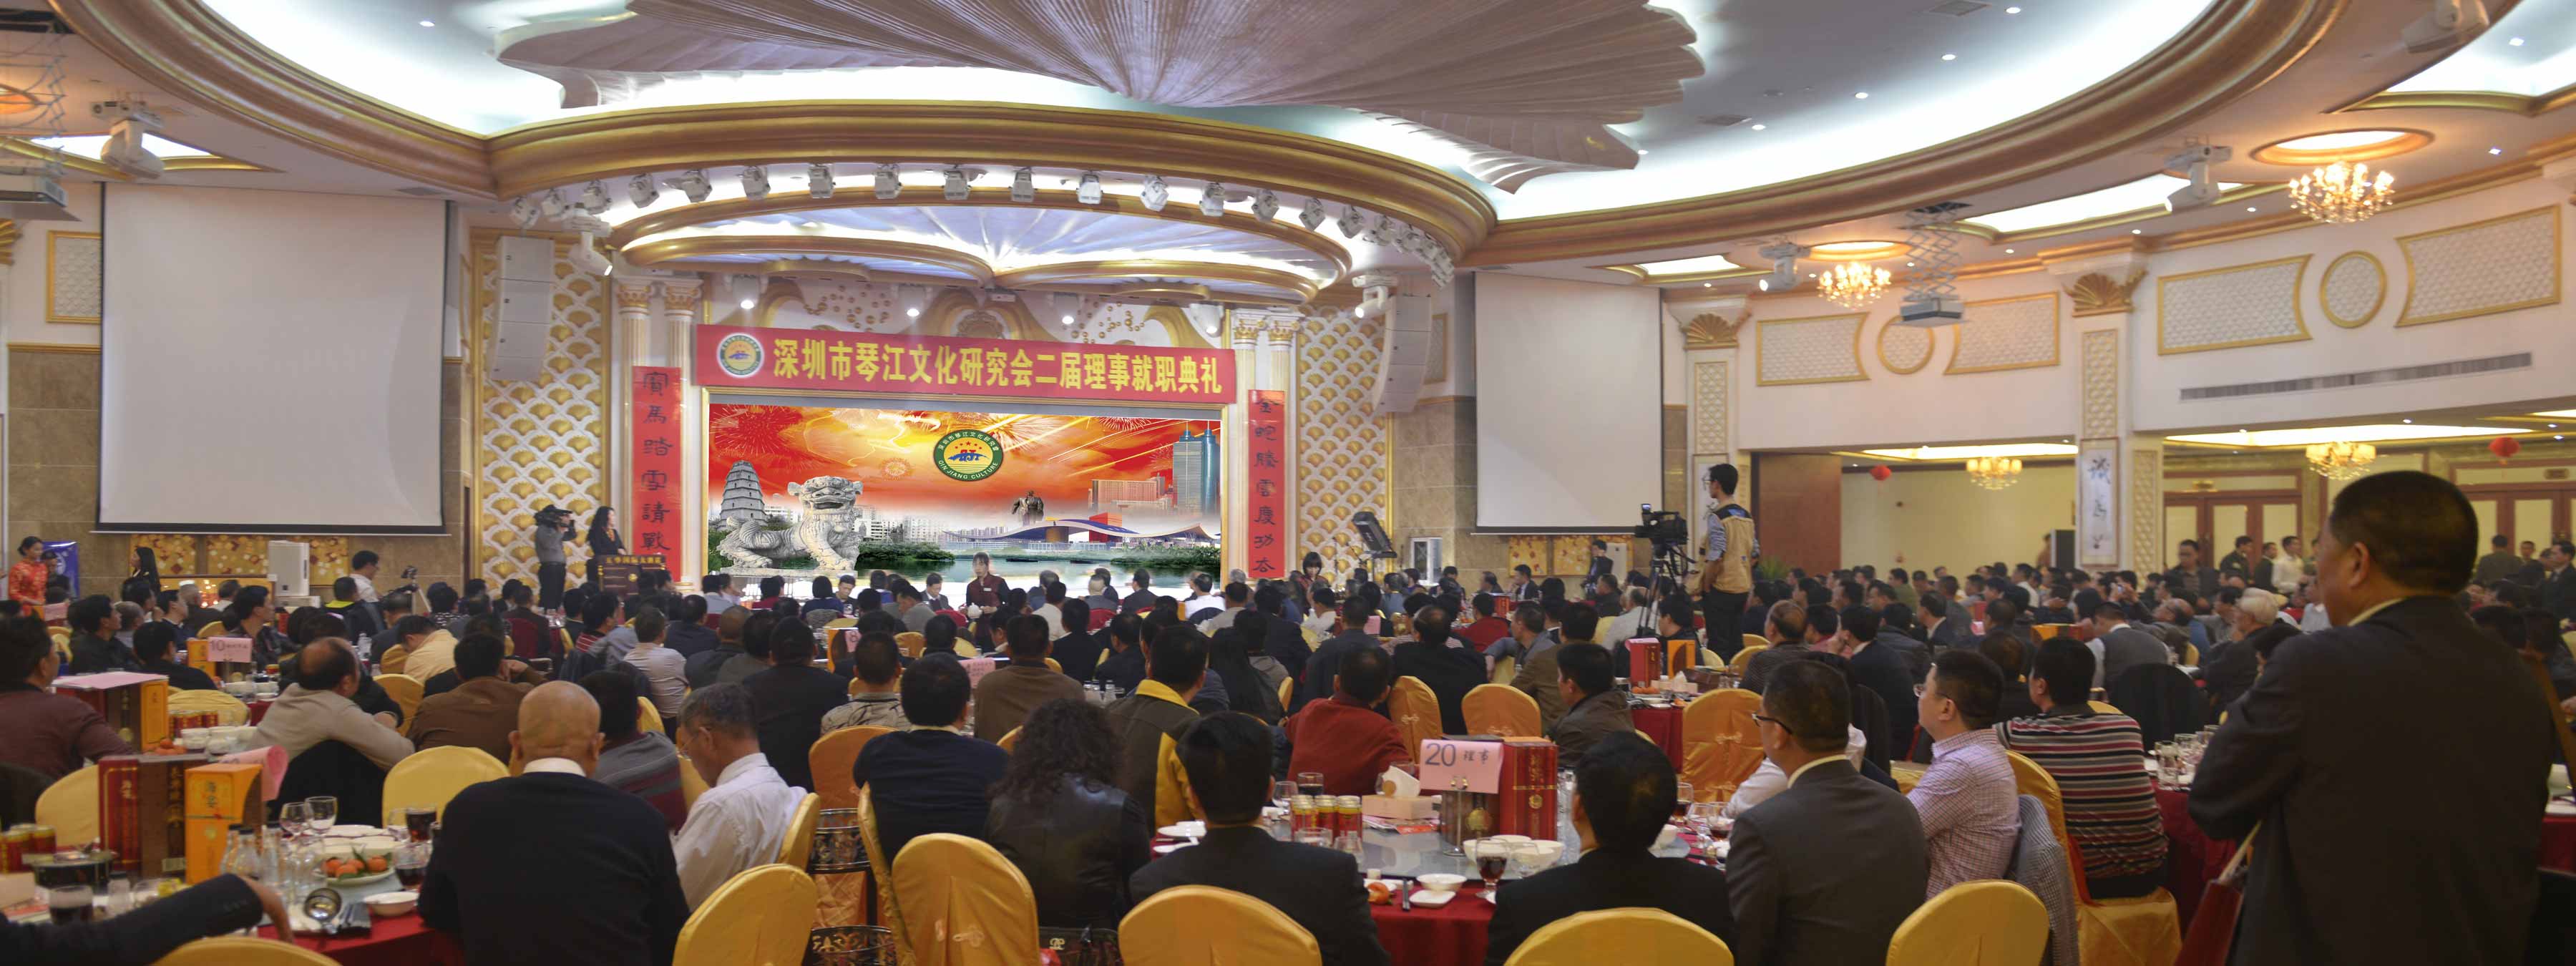 二届理事就职典礼在五华国际大酒店隆重举行                                                                                                                                                                